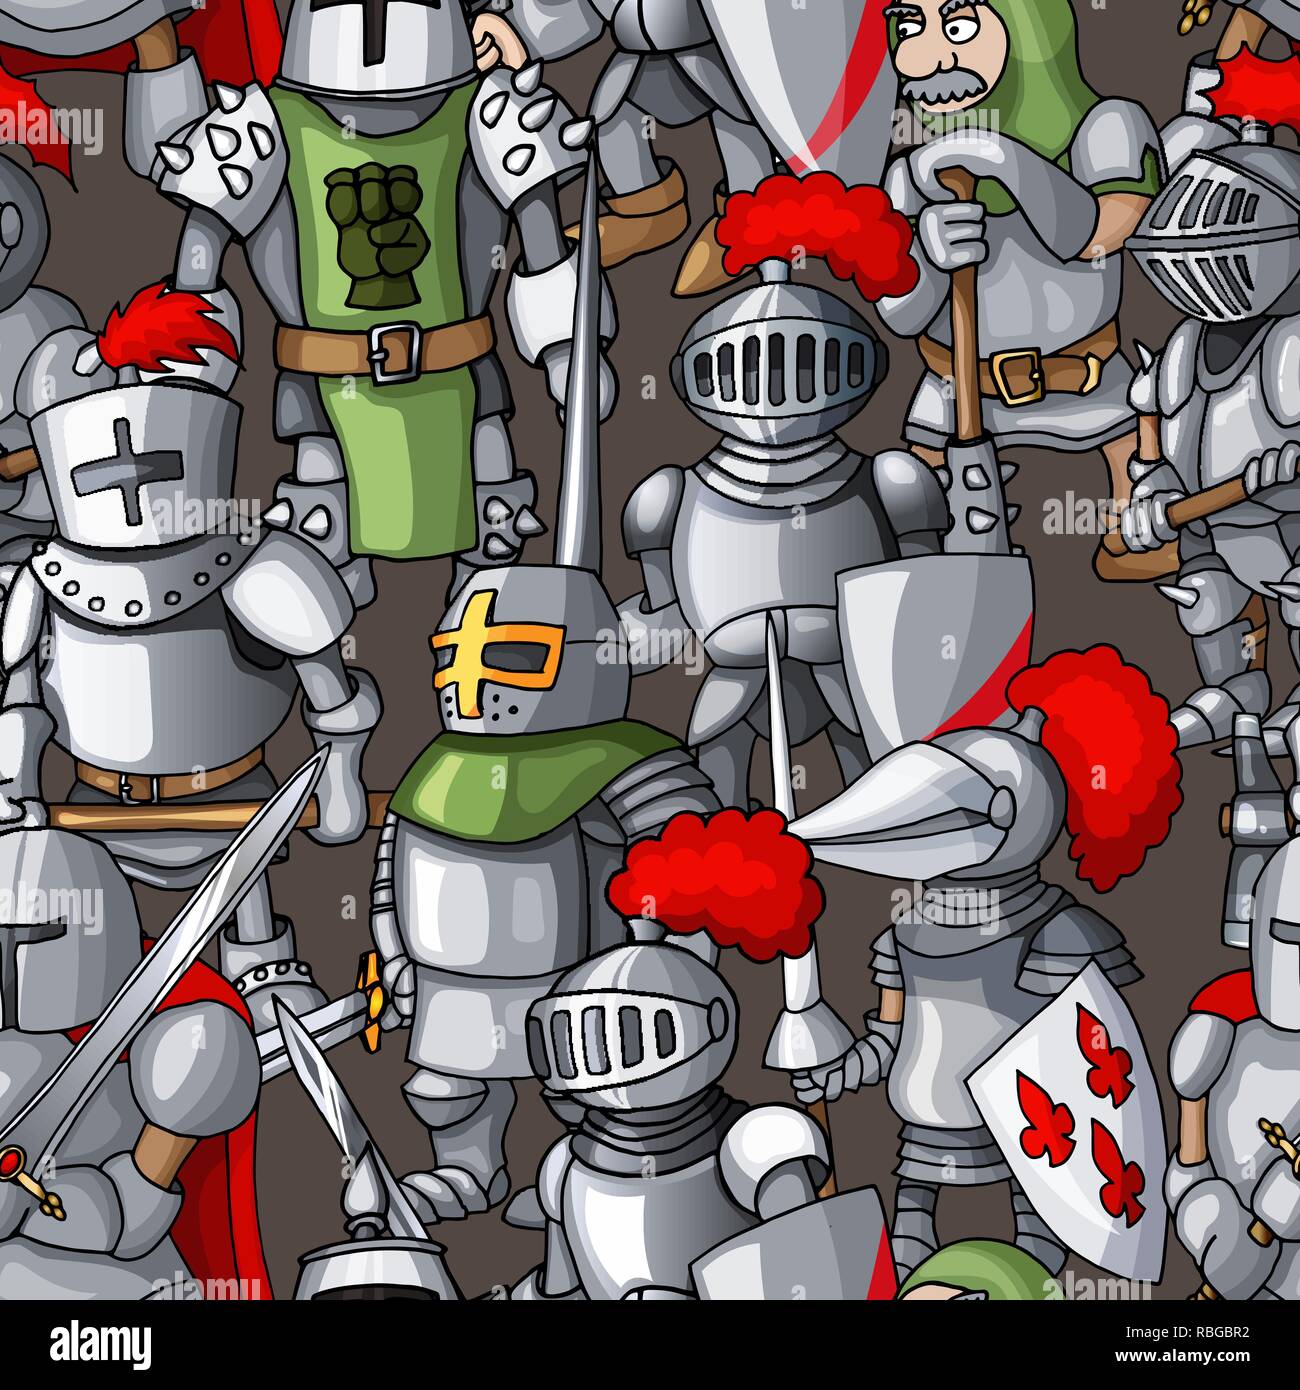 Armored médiéval knights formation hand drawn seamless pattern, armes de guerriers Illustration de Vecteur